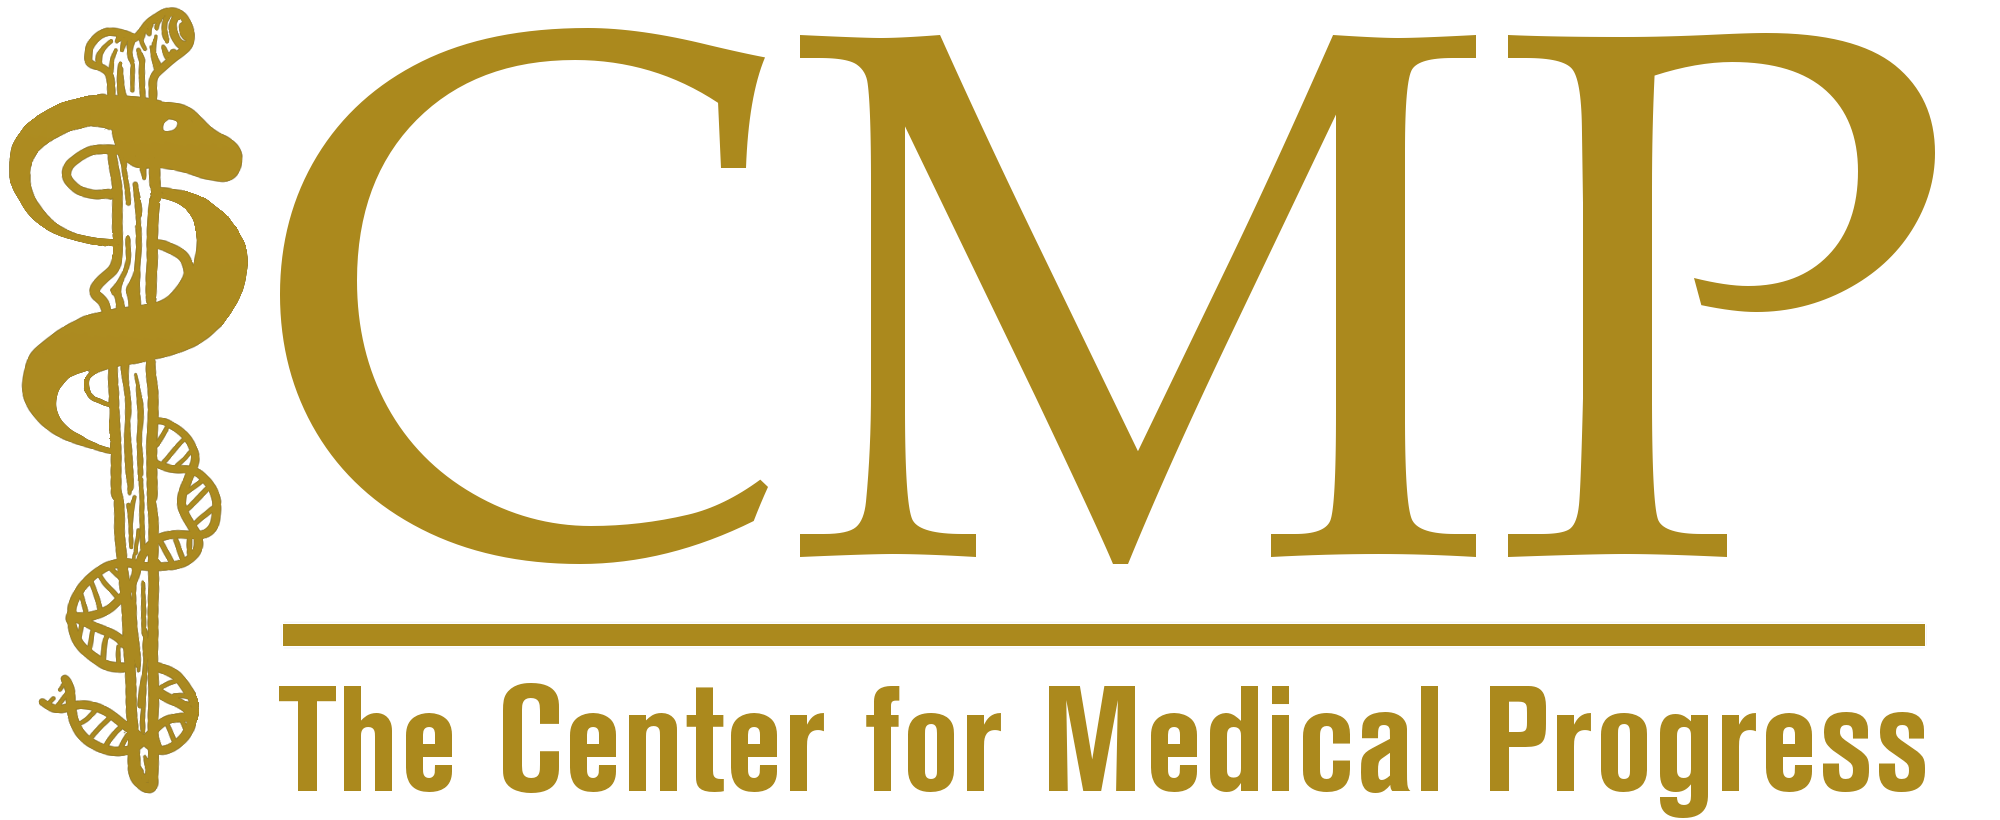 The Center for Medical Progress